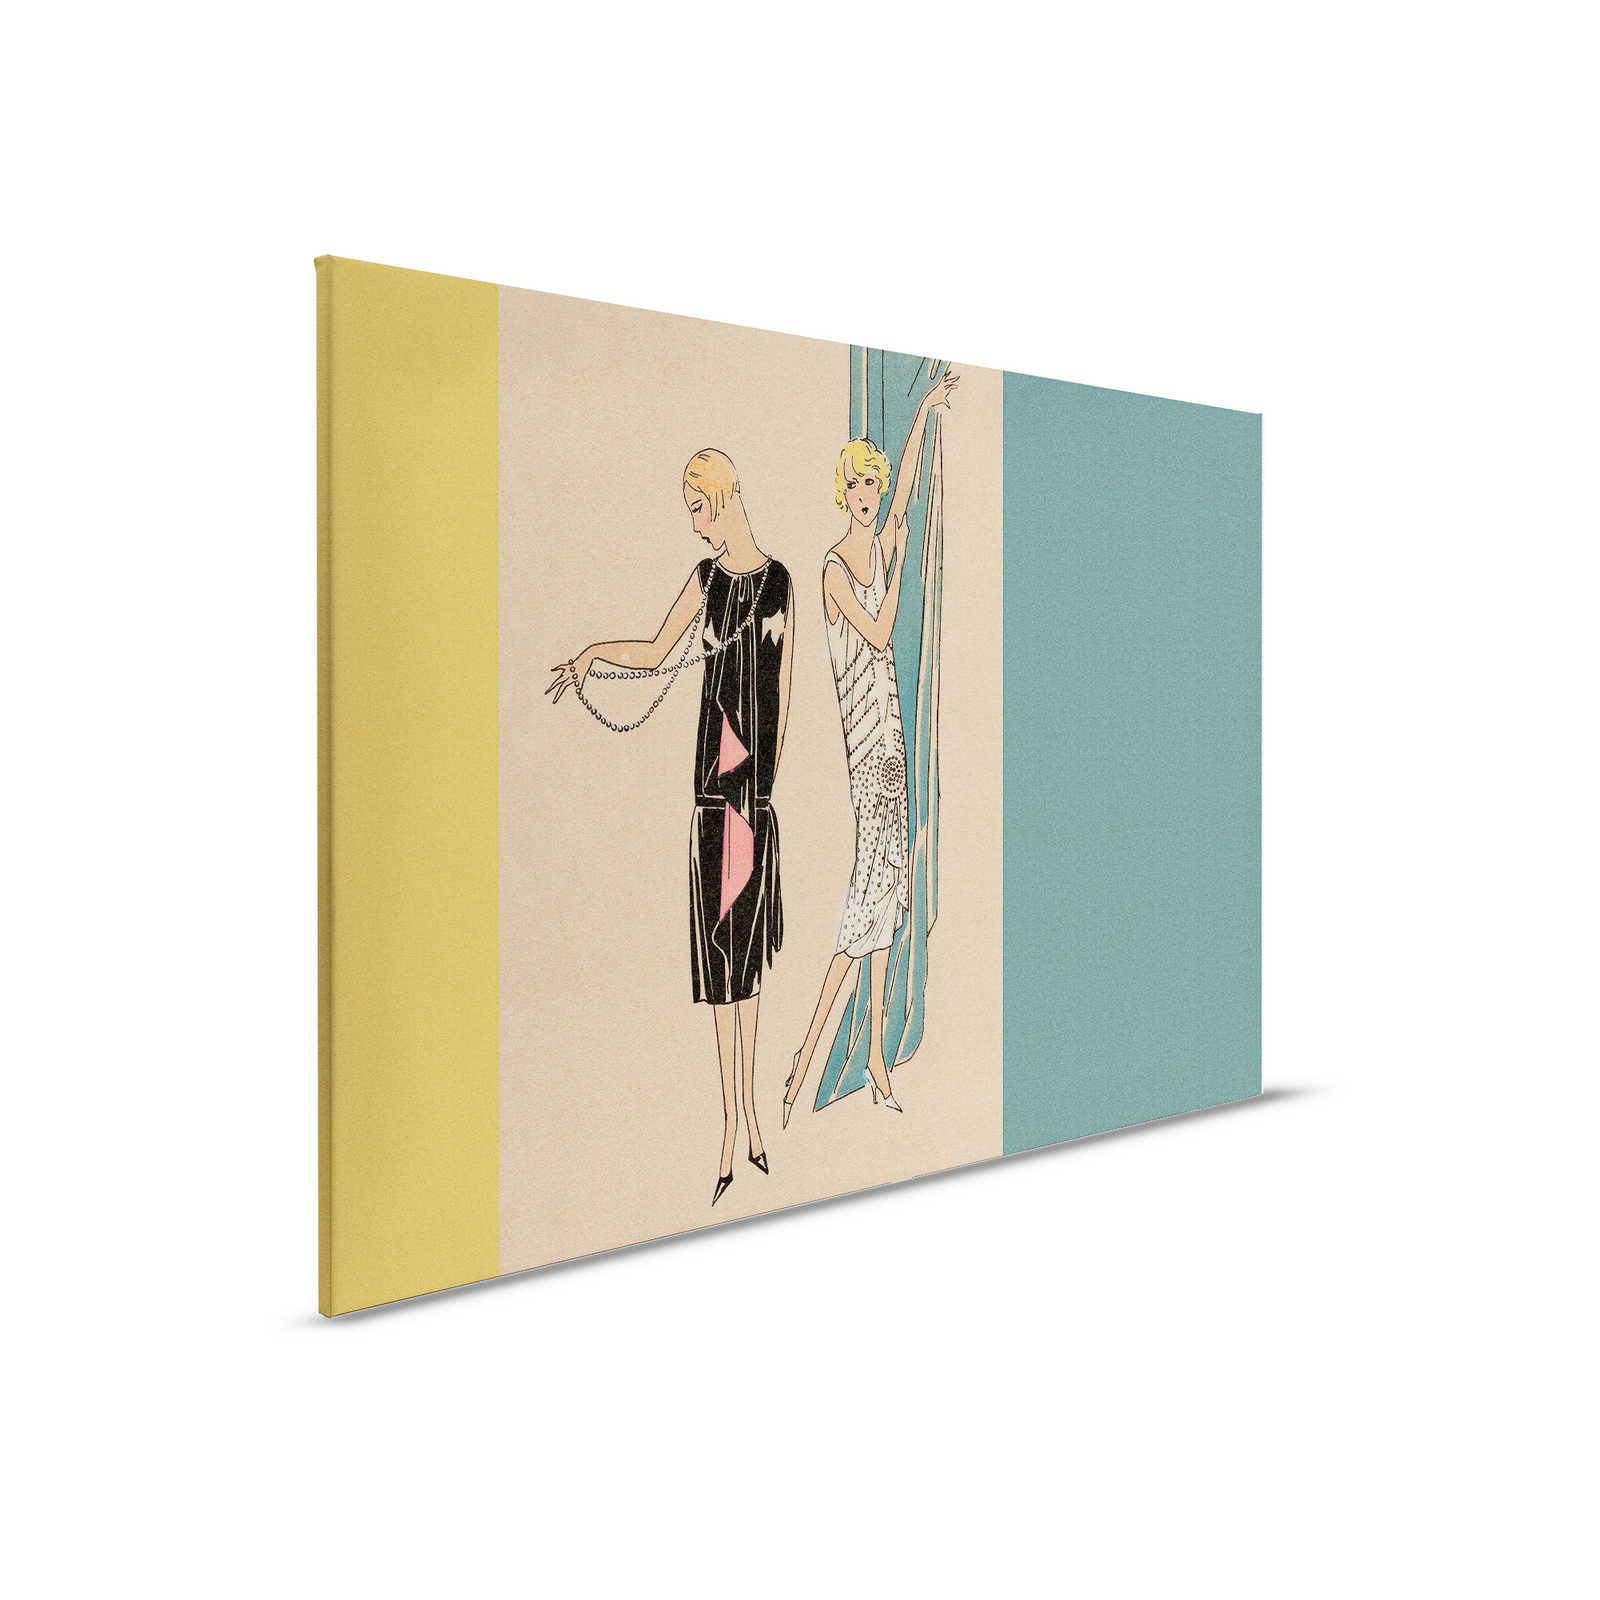 Parisienne 2 - Toile mode années 20 style rétro en pétrole & jaune - 0,90 m x 0,60 m
